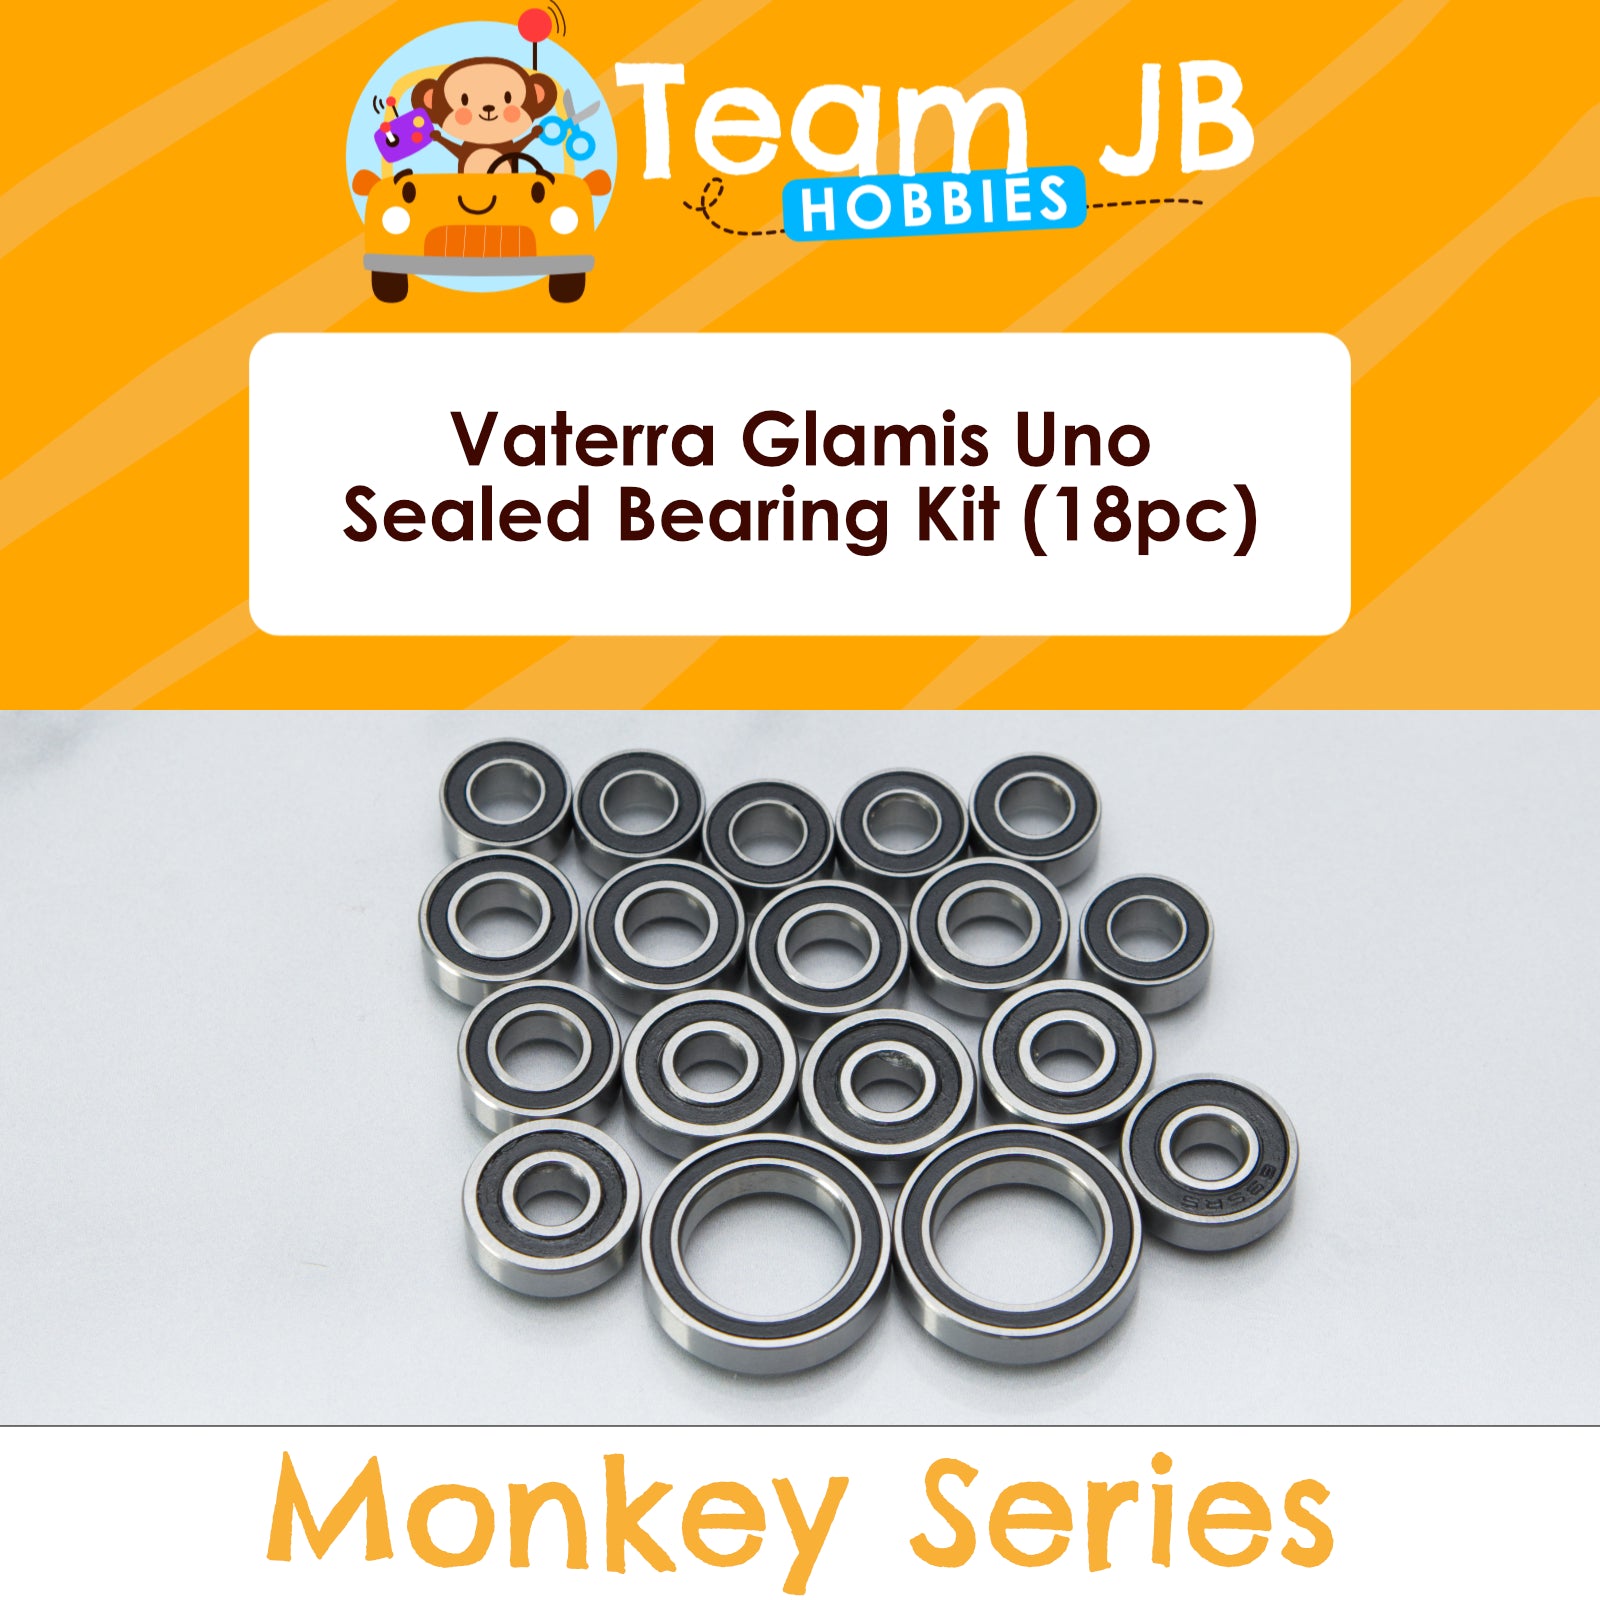 Vaterra Glamis Uno - Sealed Bearing Kit